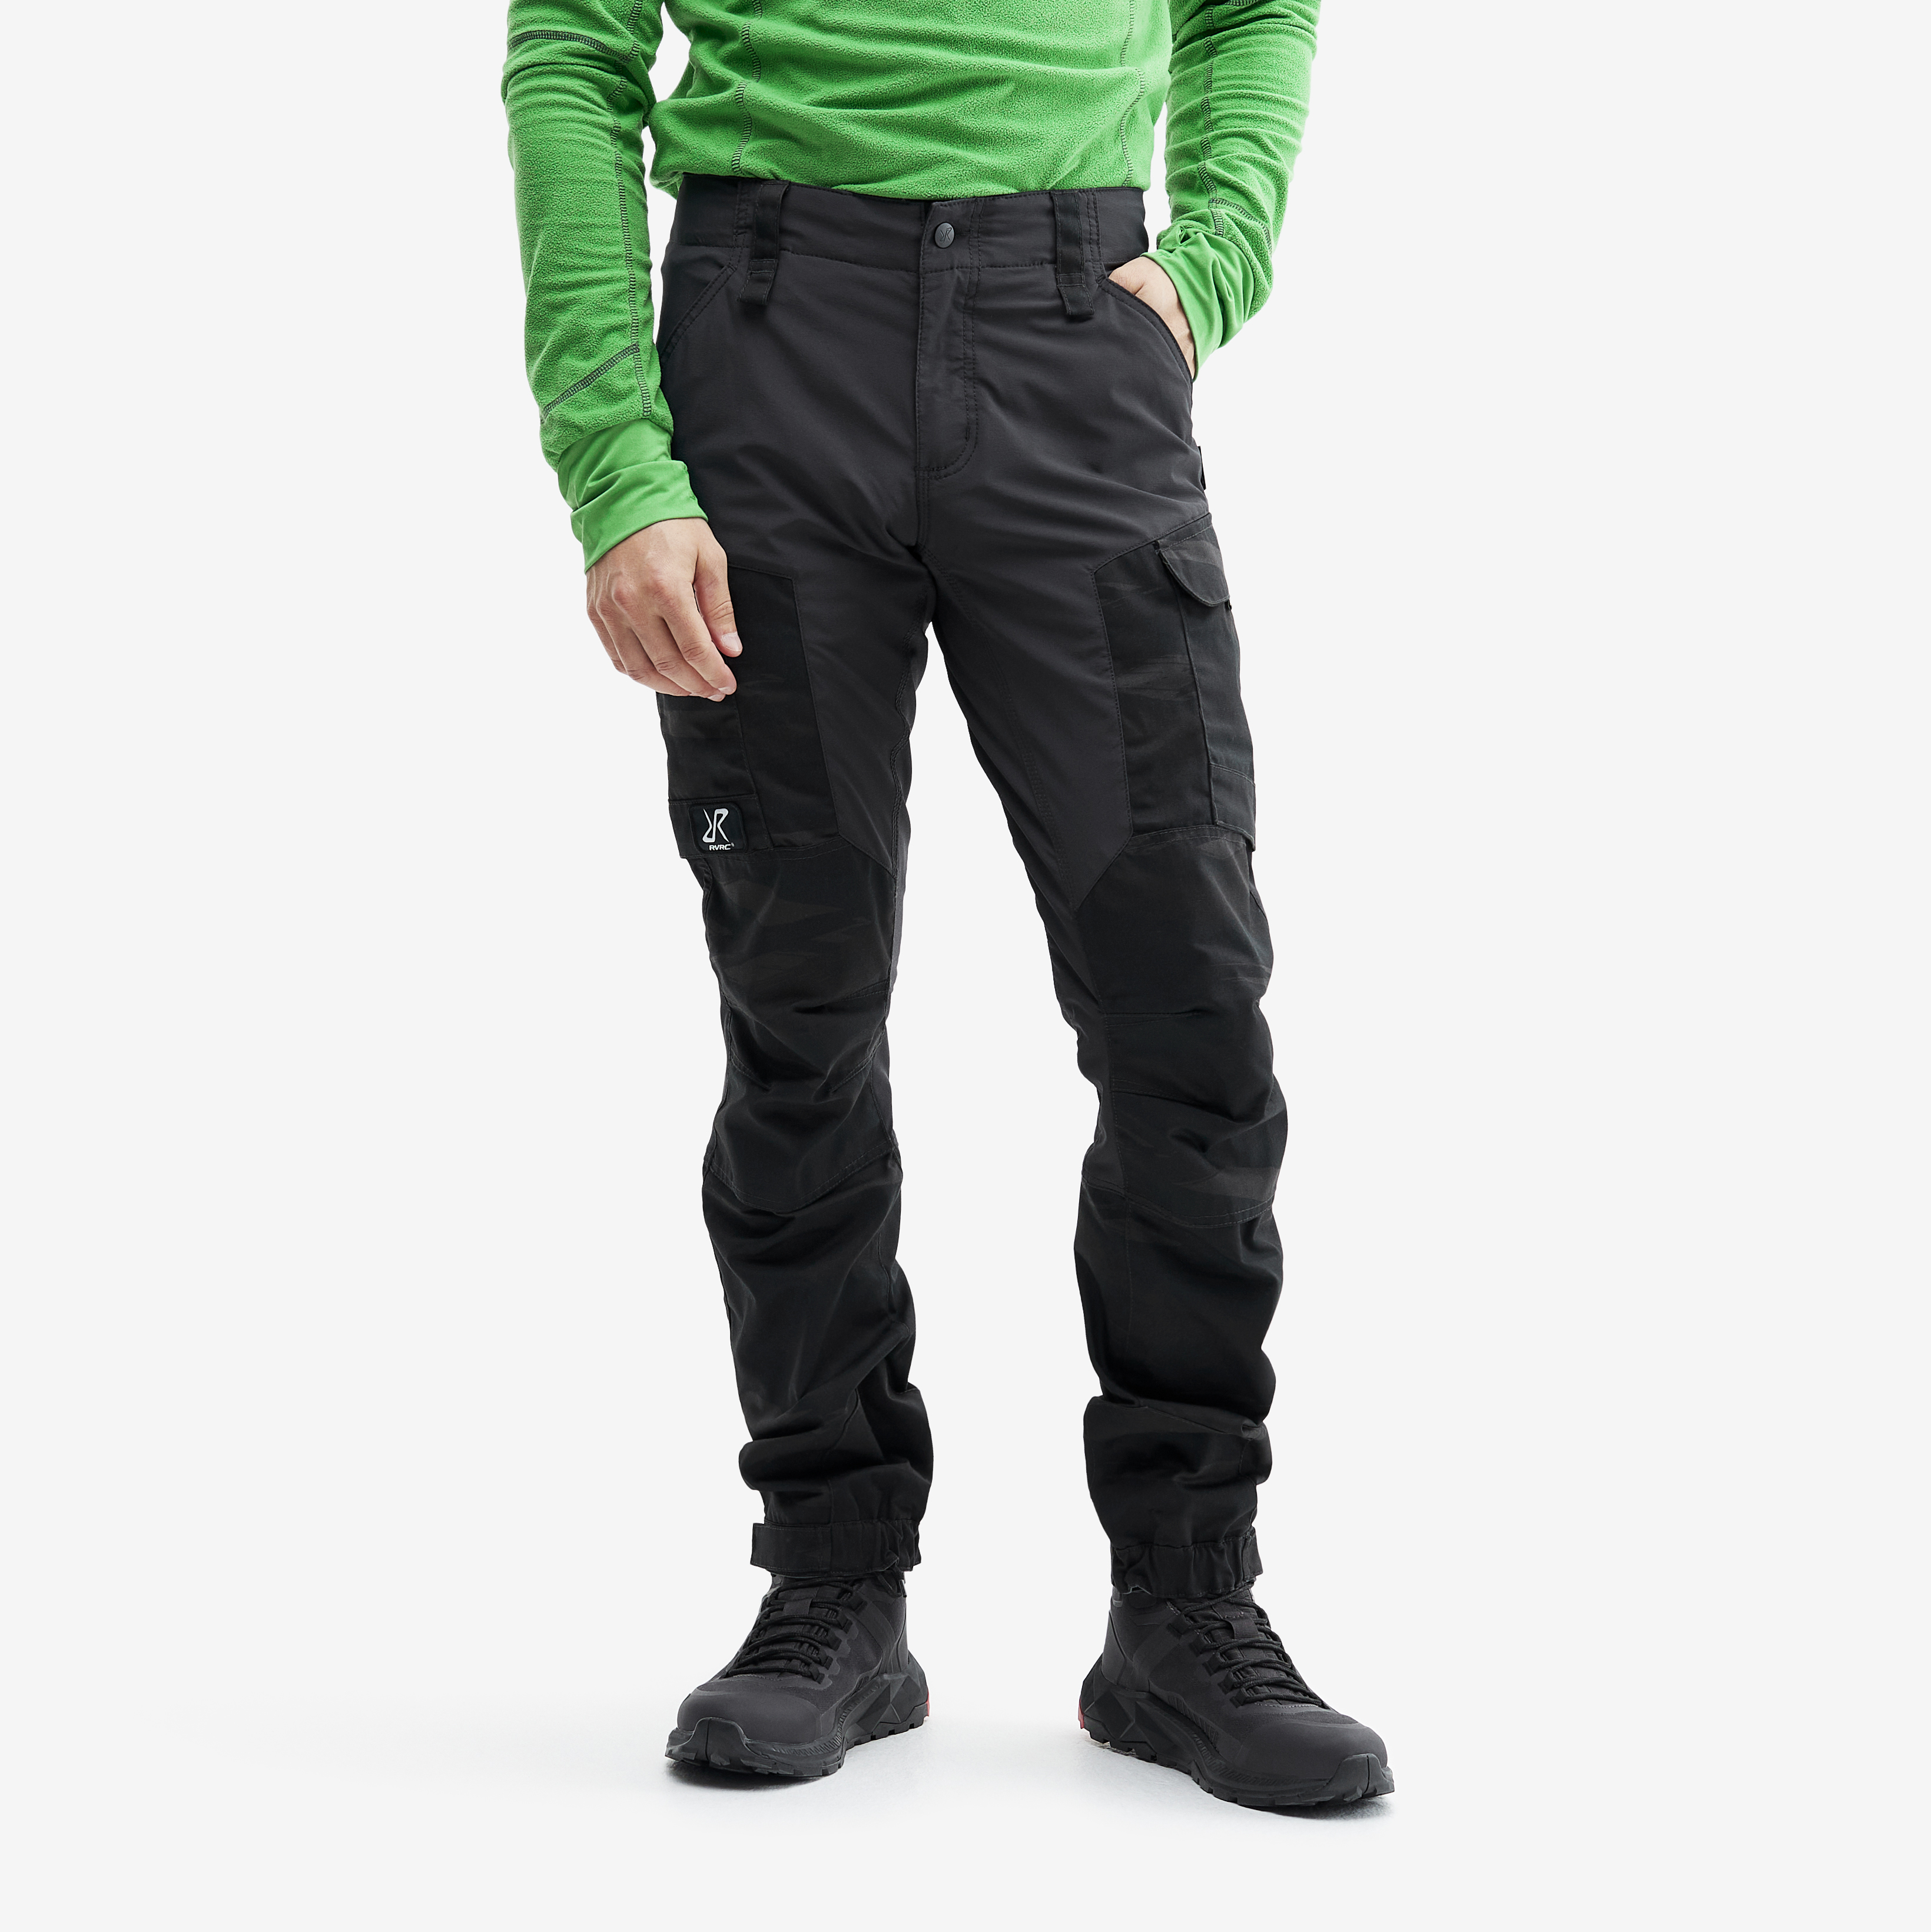 RVRC GP outdoor pants for men in dark grey